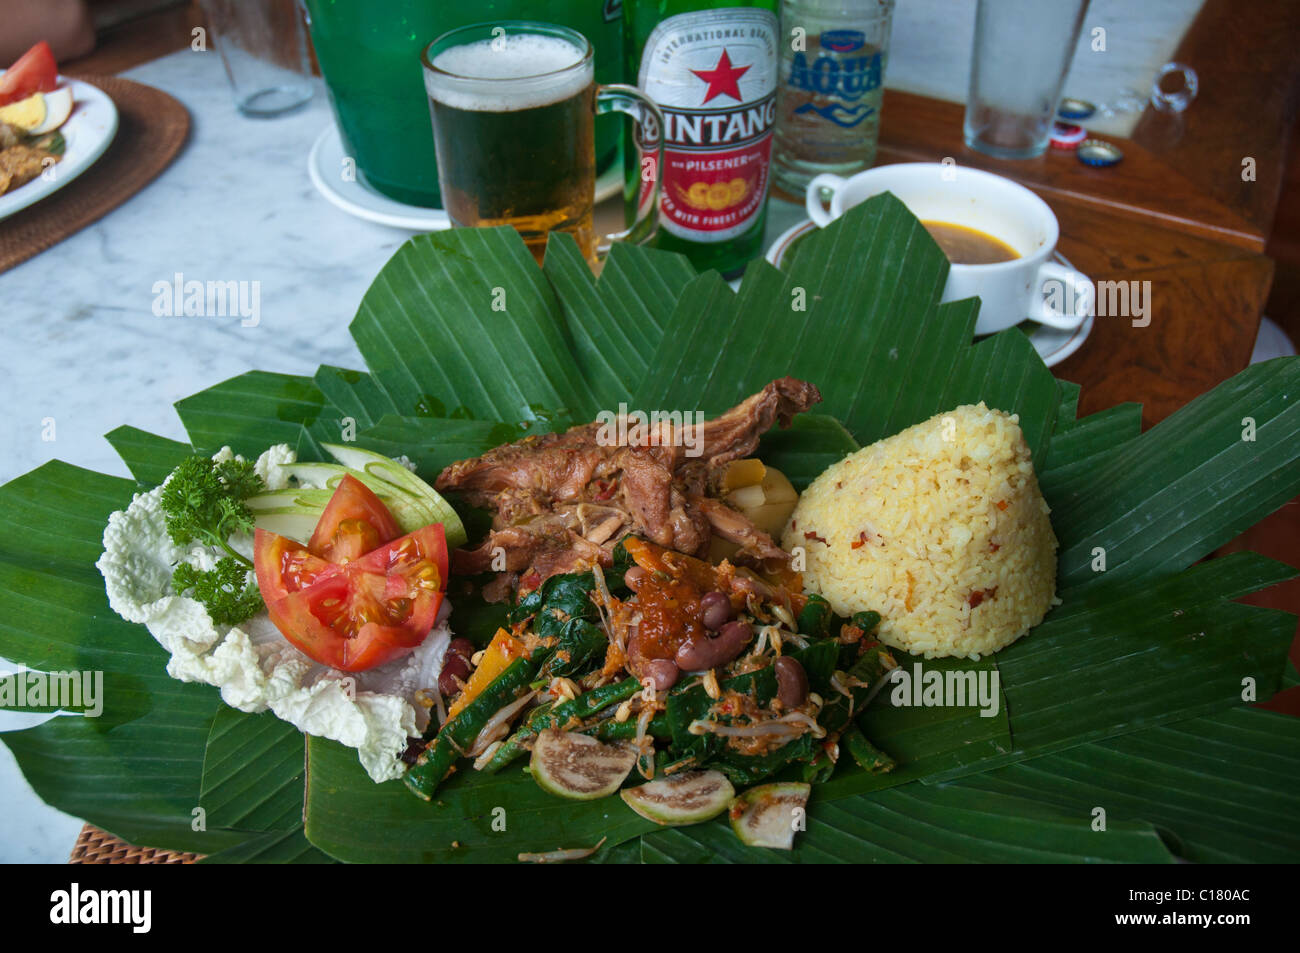 Ragoût de poulet balinais cuit lentement appelé ayam betutu avec riz et salade servi sur des feuilles de bananier vert Banque D'Images